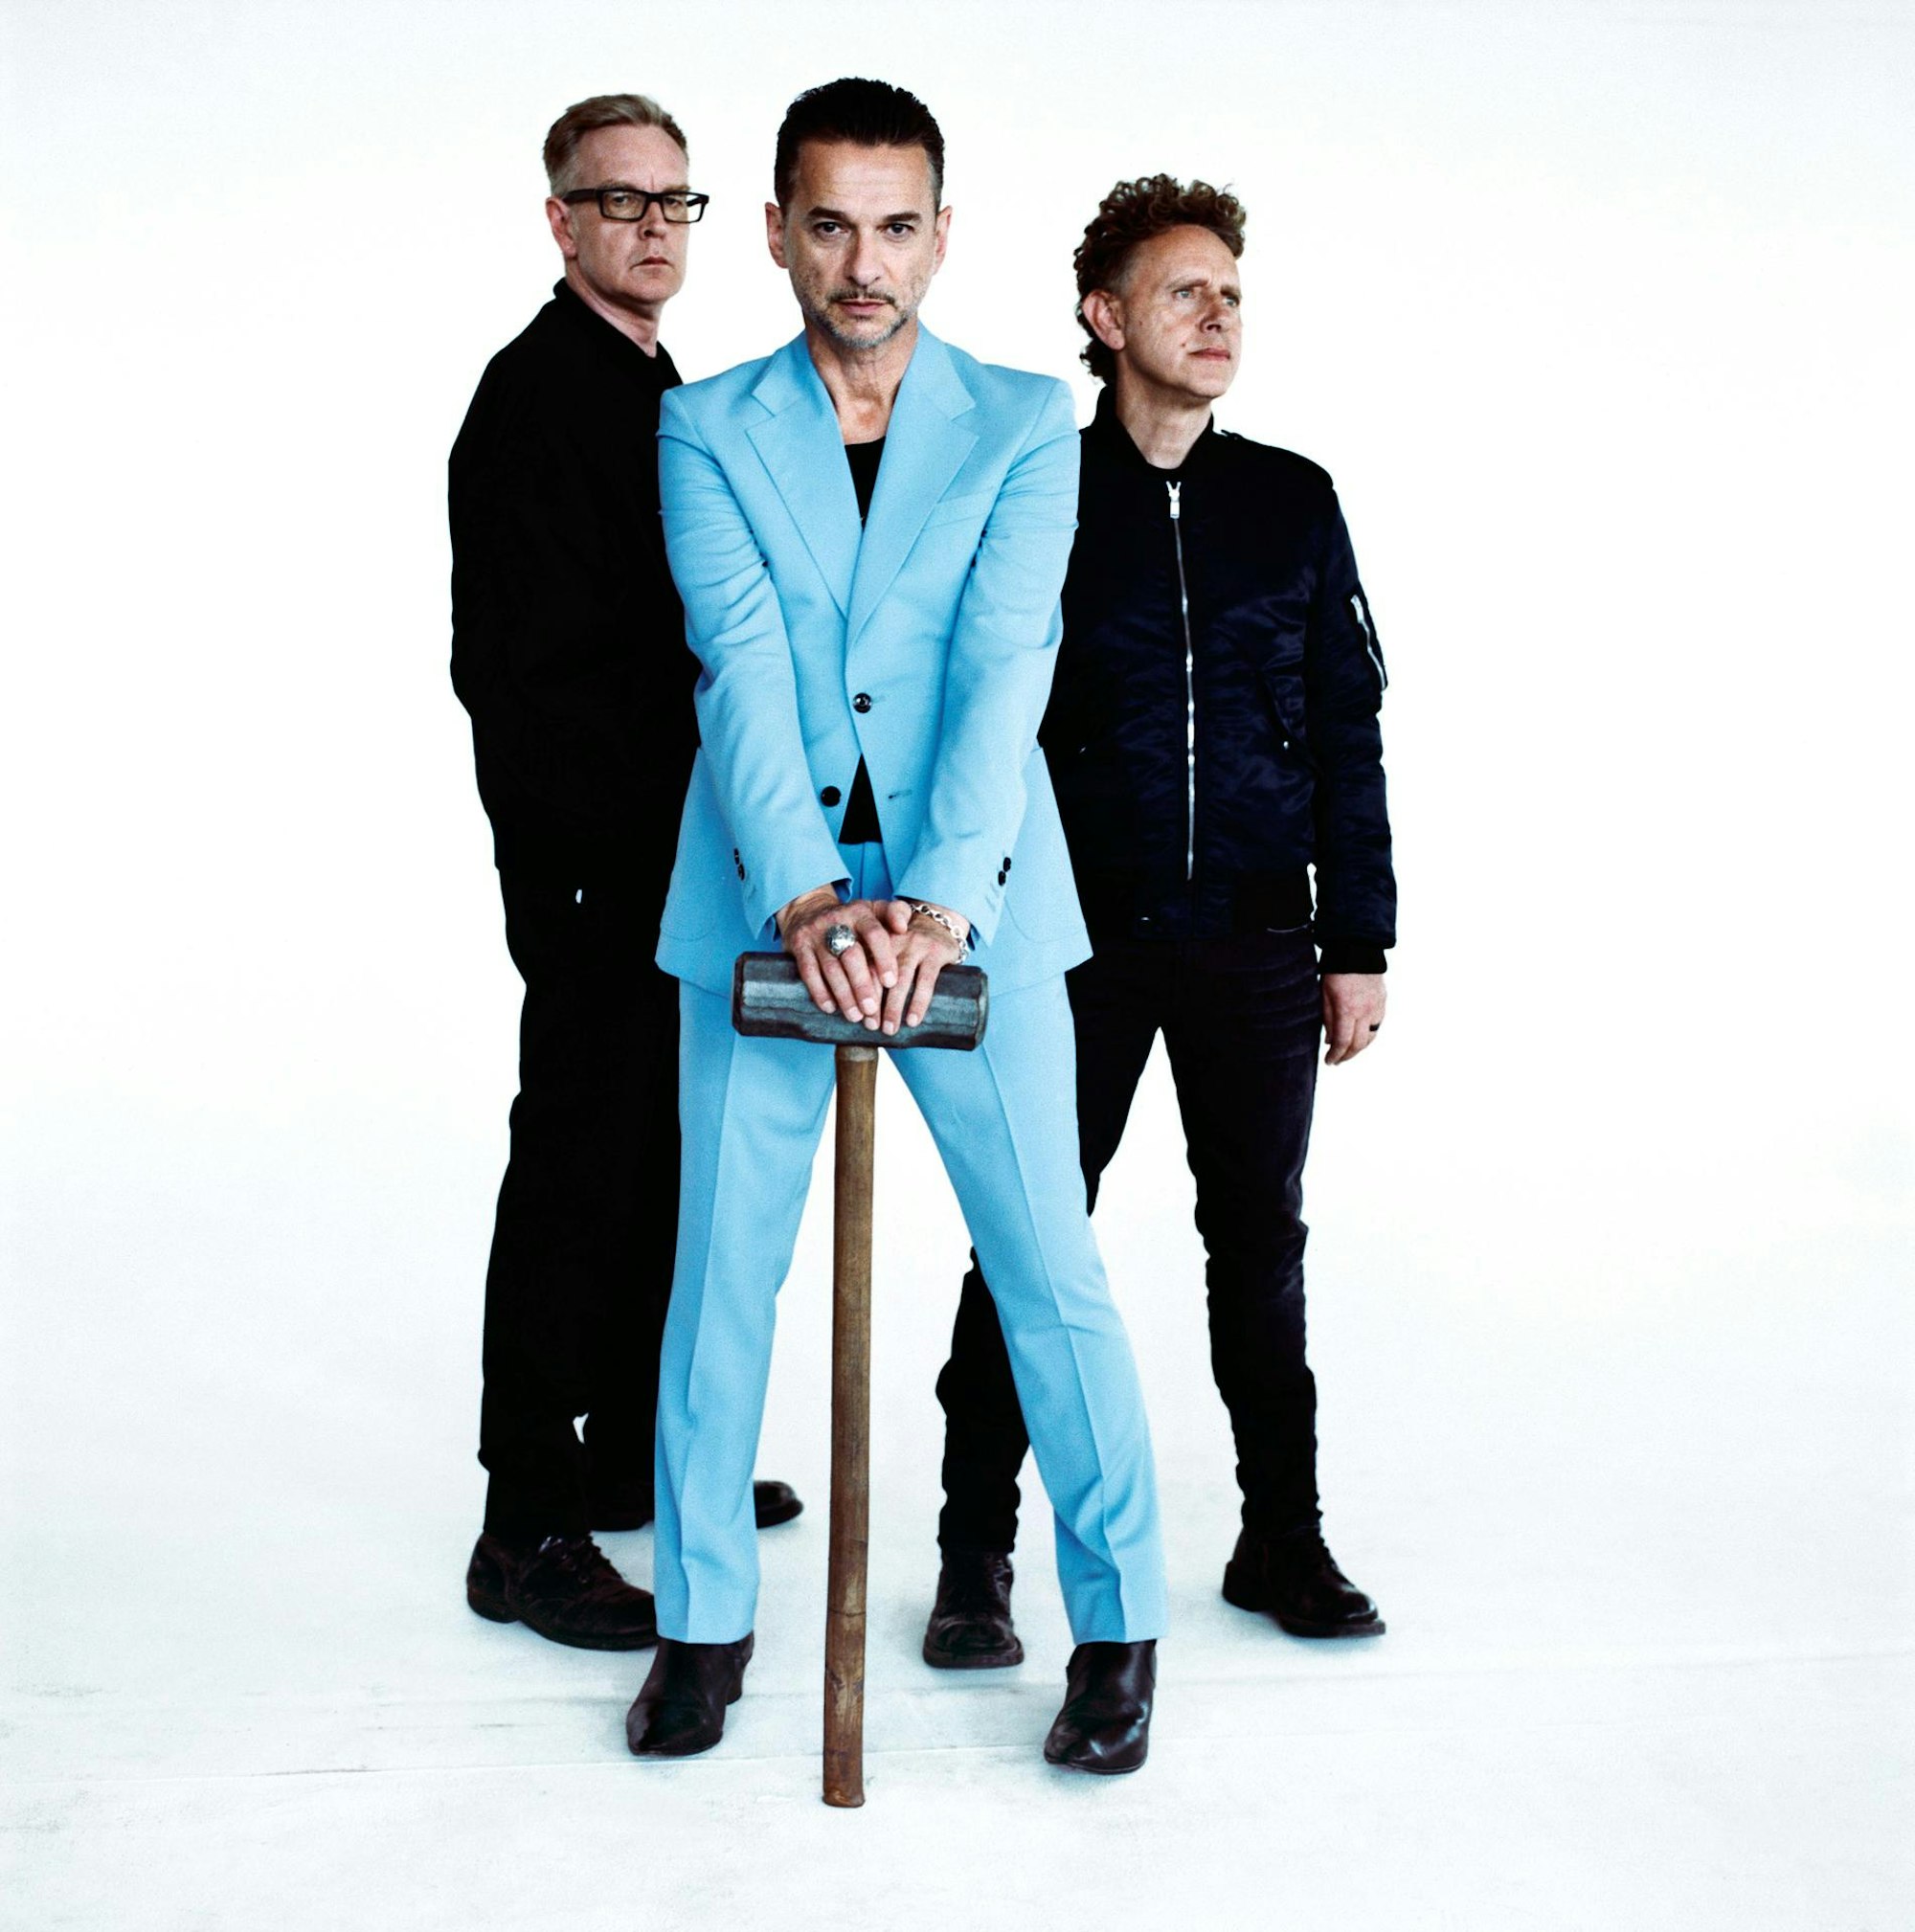 Depeche Mode by Dirk Becker Entertainment